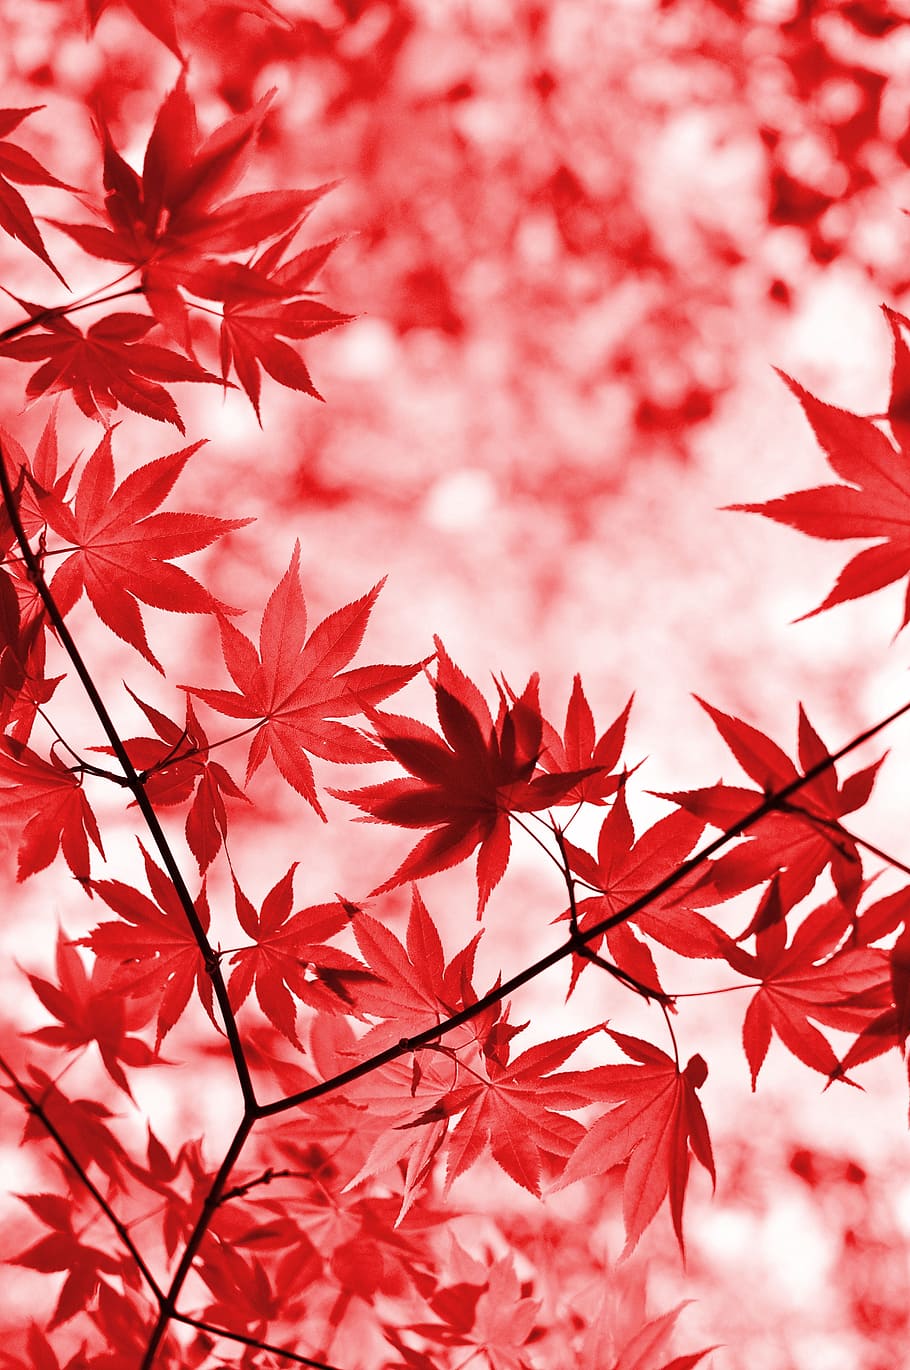 赤いカエデの葉, カエデ, 赤, 葉, 木, 日本のカエデ, 枝, 植物, ロッシ, 赤い葉